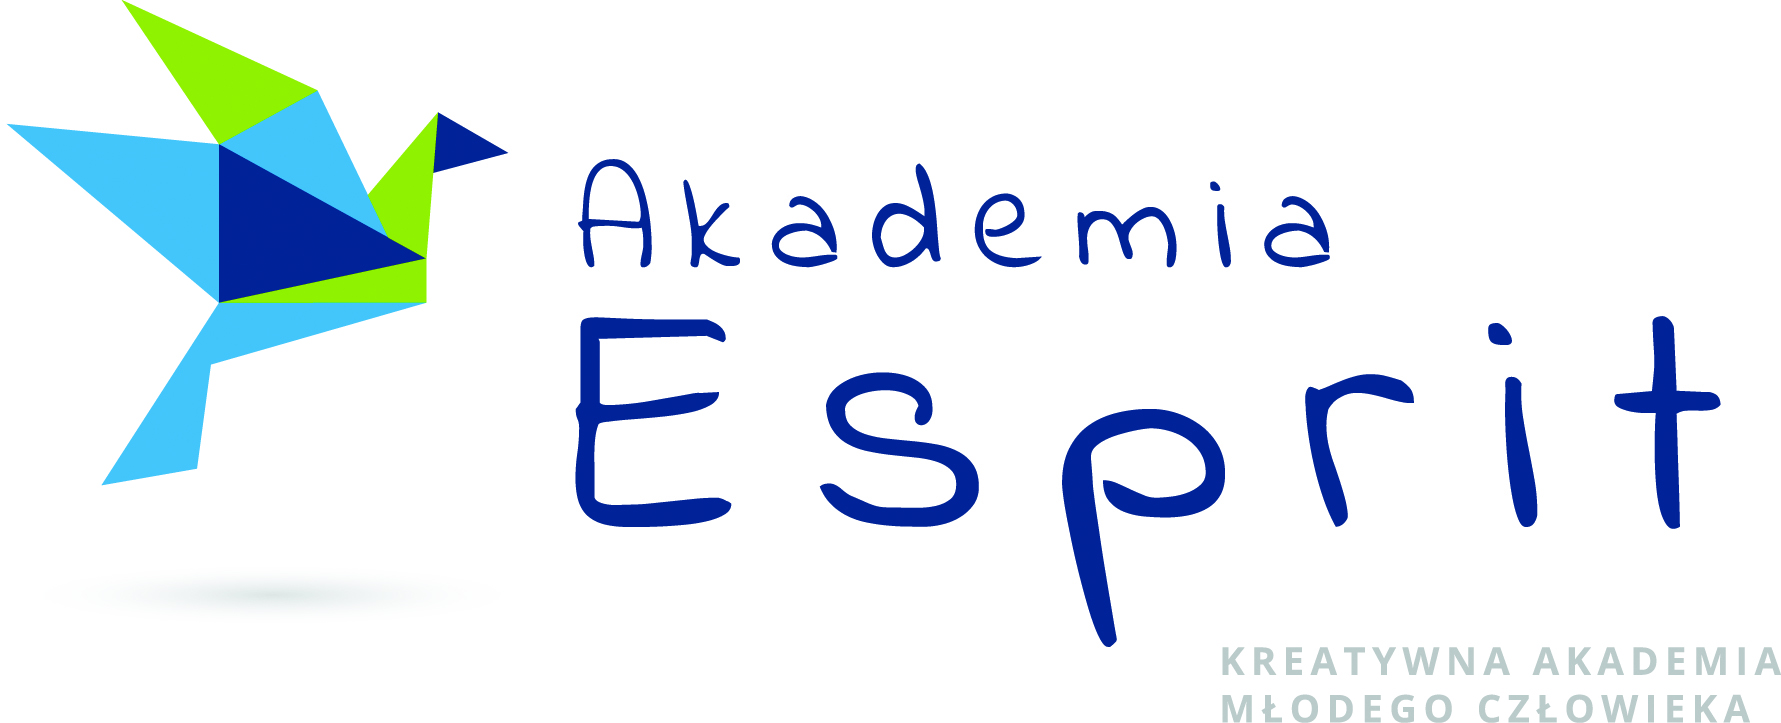 Akademia Esprit